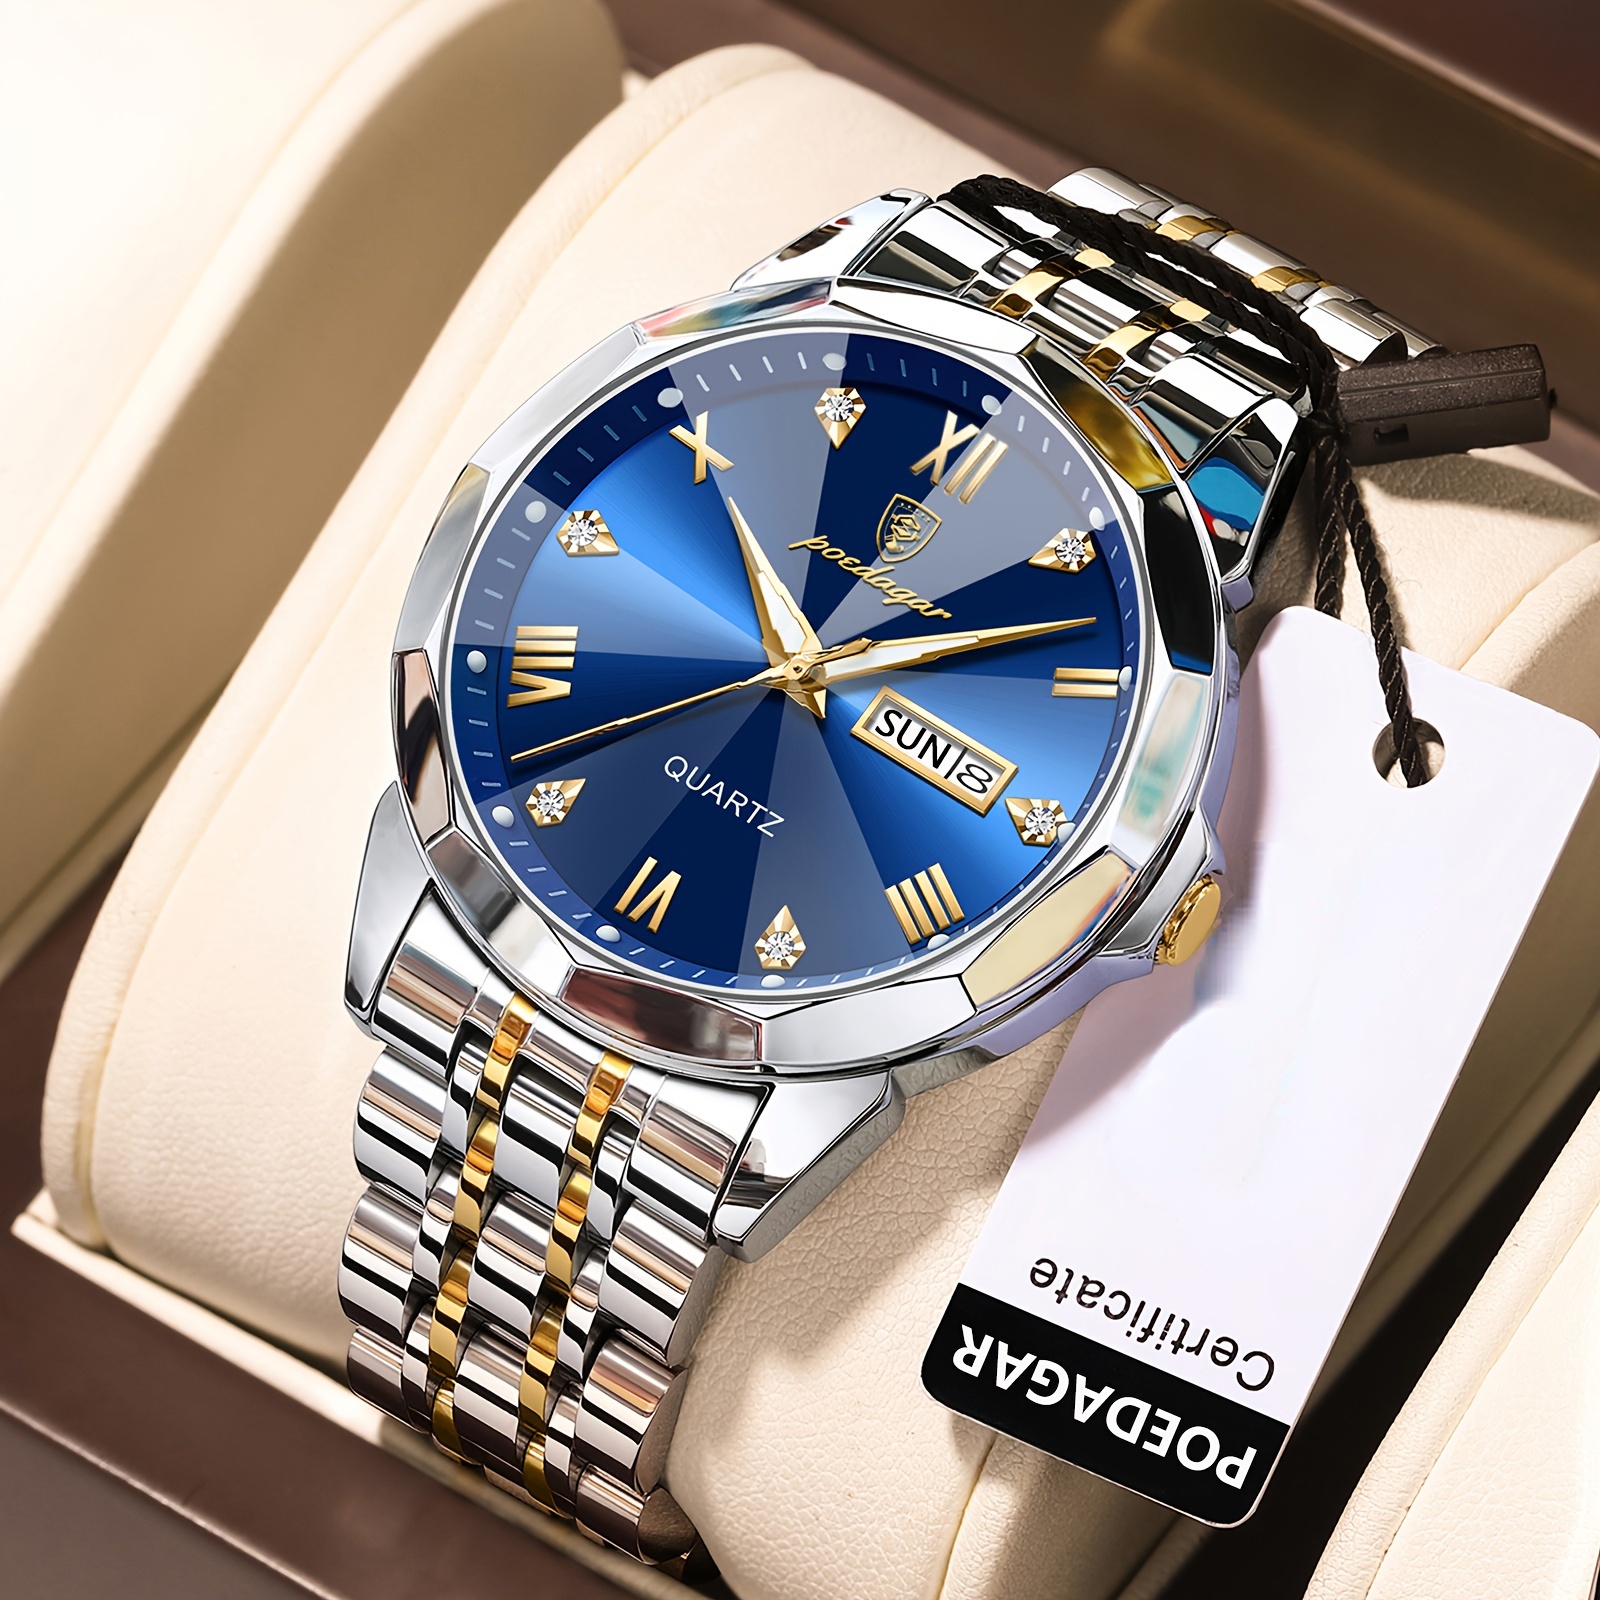 Fashion Men's Watches Stainless Steel Mesh Belt Black Quartz Chronograph  Watch Men Luxury Business Analog Wrist Watches Mens Clock Uhren Herren